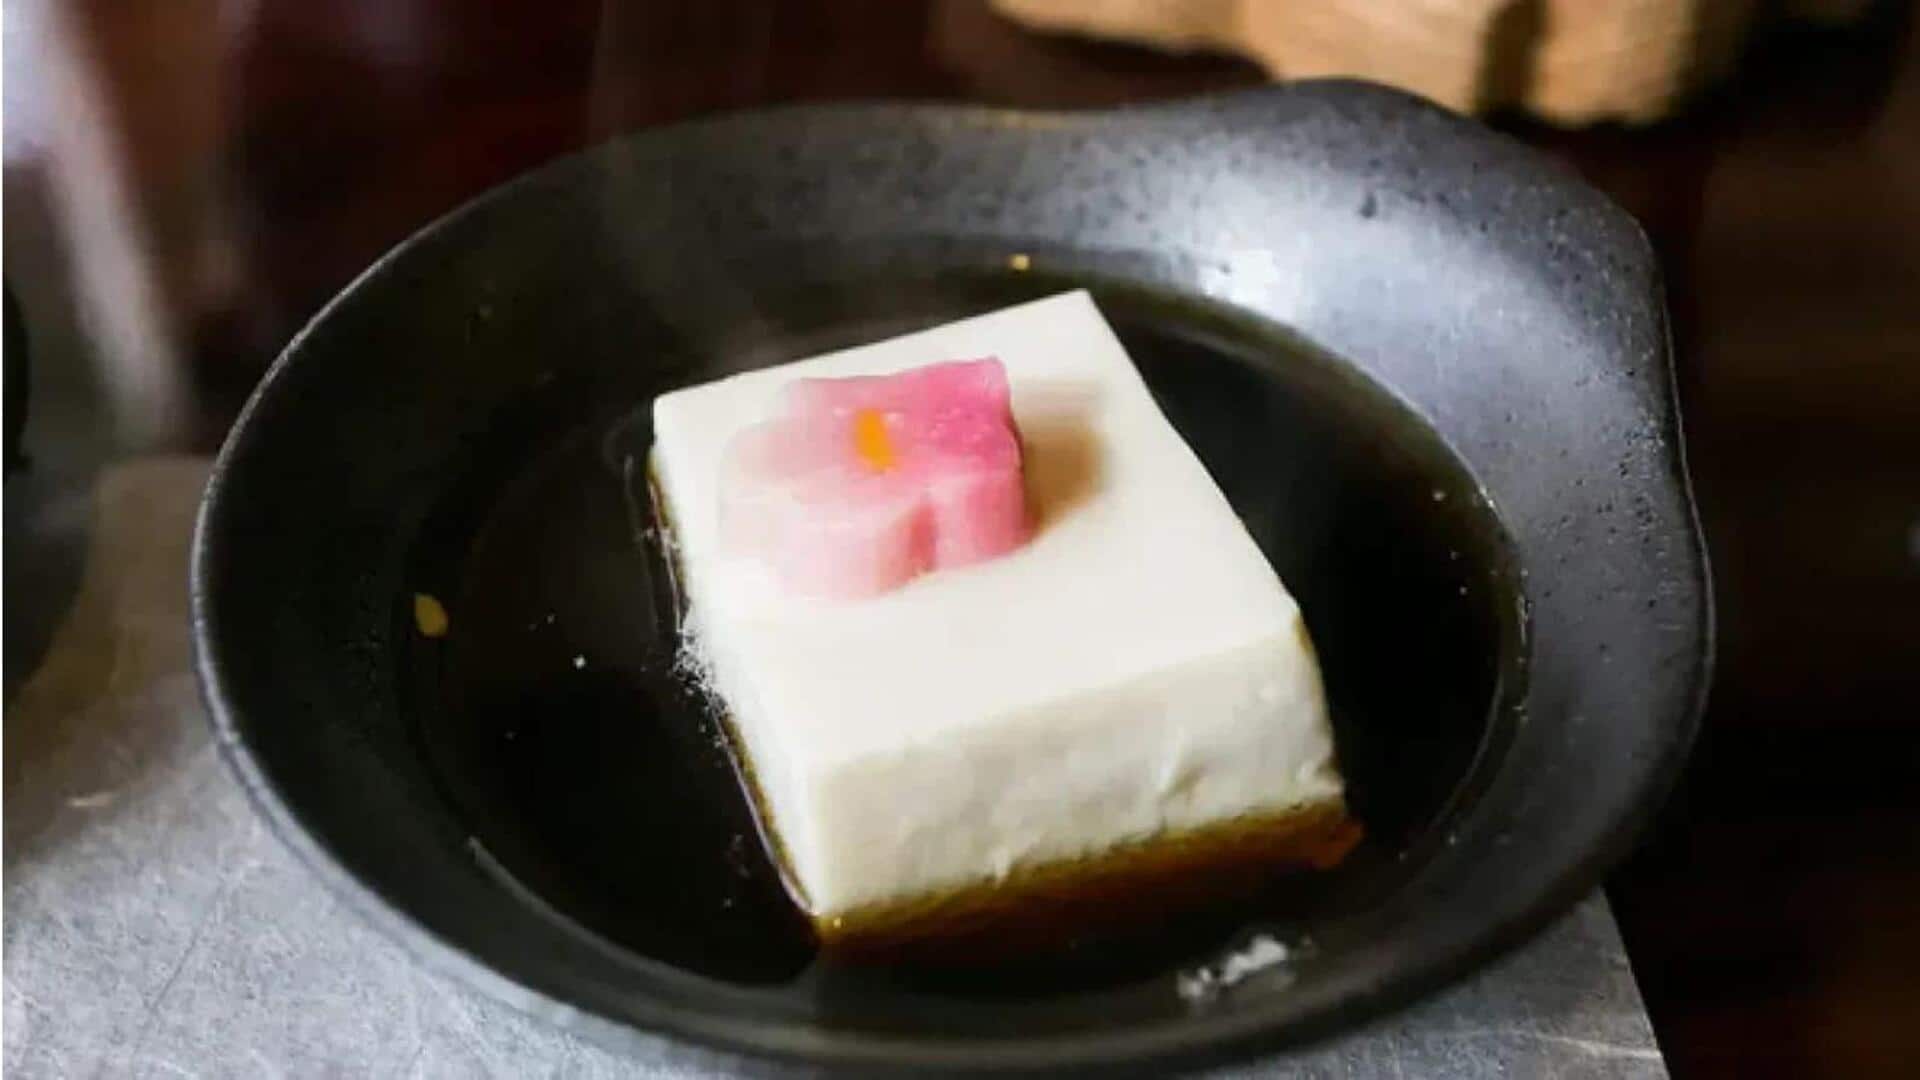 Petualangan mencicipi tahu di Kyoto: Hidangan tahu terbaik untuk dicicipi